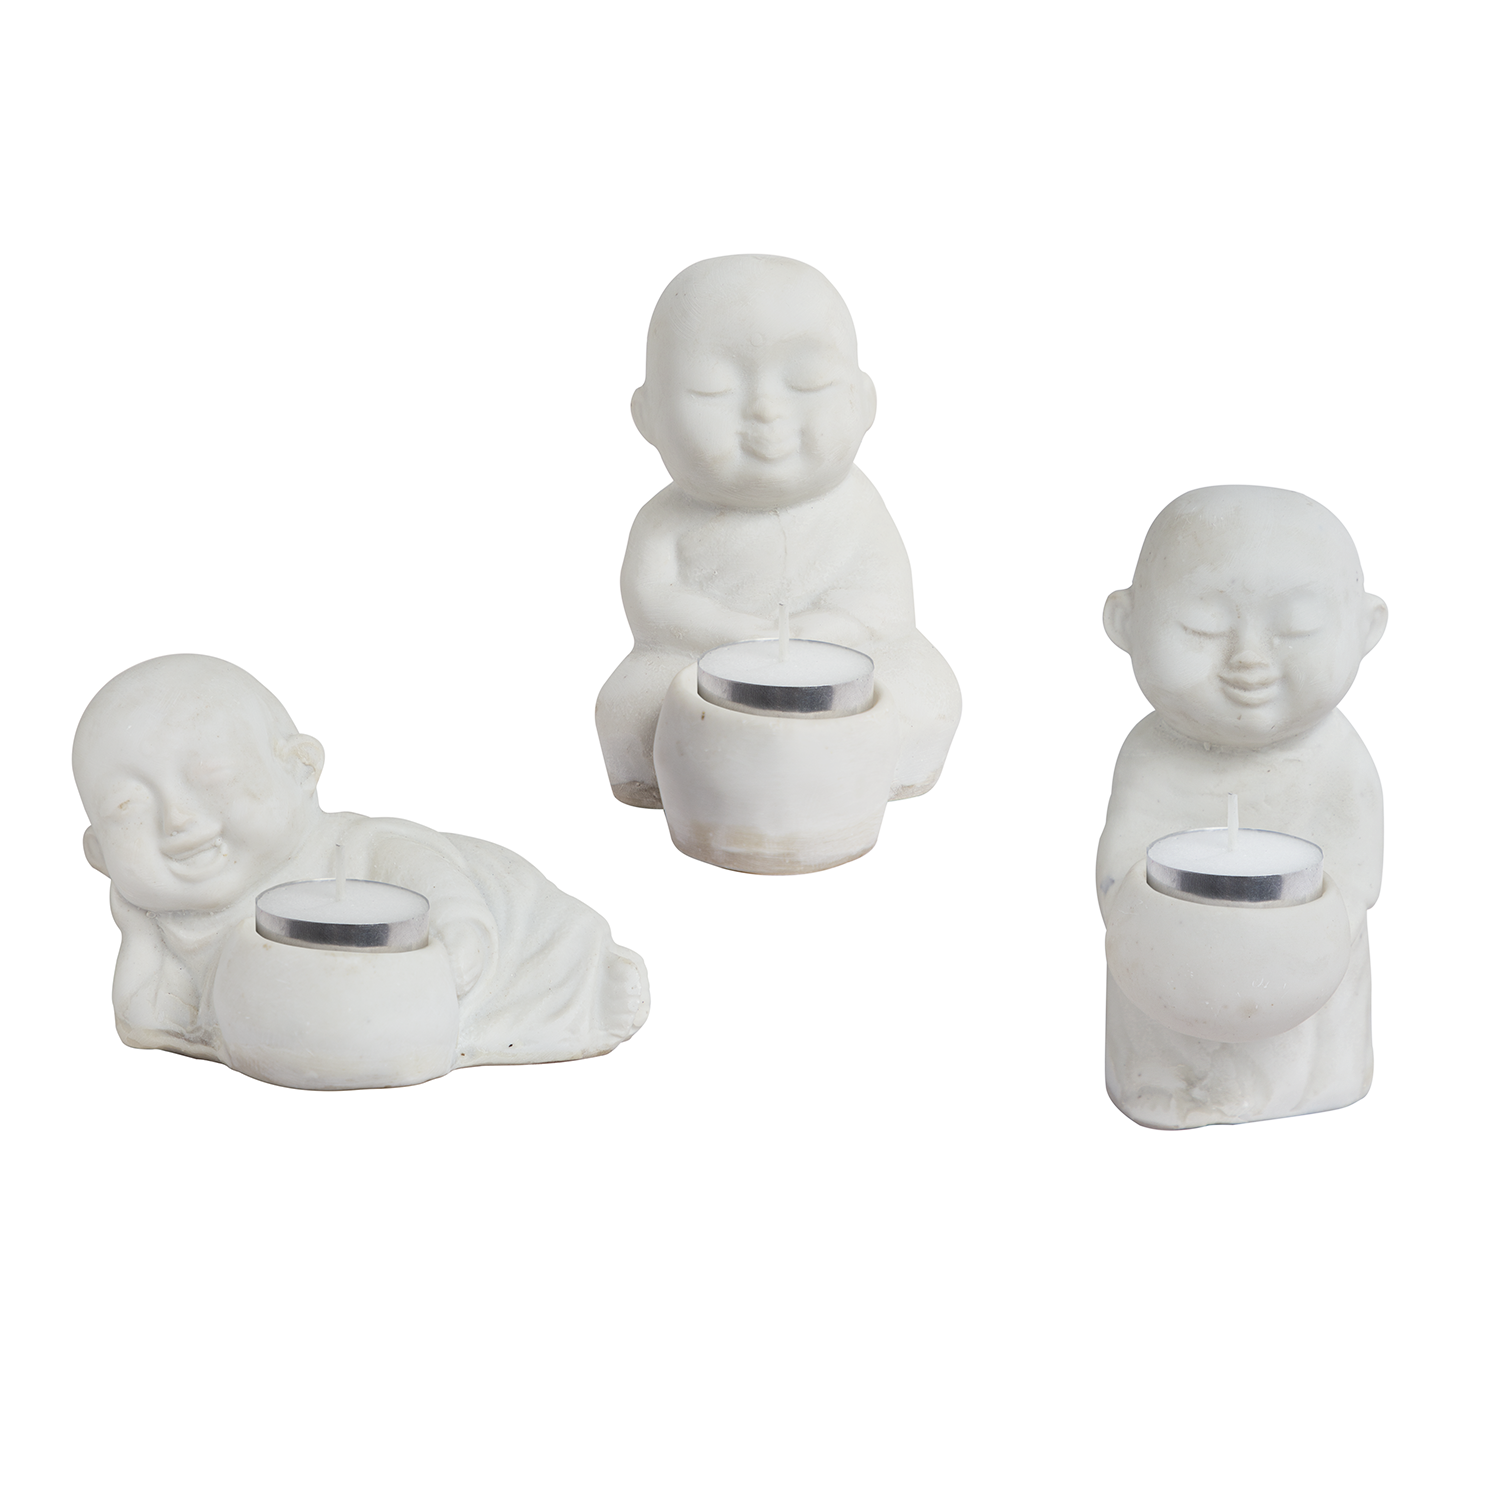 Joyful Baby Monk Decorative Candle Holders - Set of 3